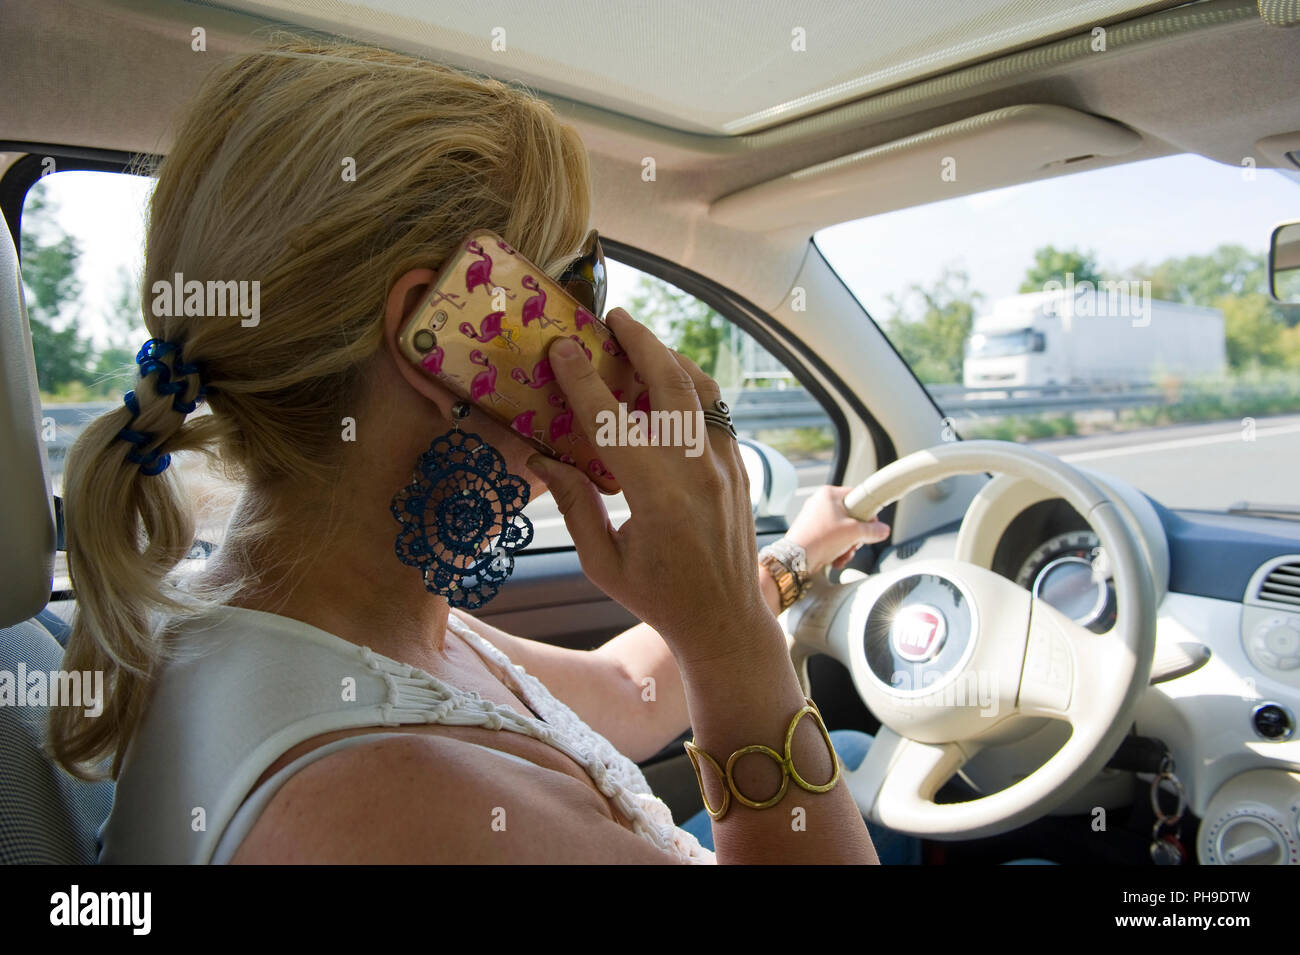 BOTTROP, Germania - 16 agosto 2018: una donna bionda sta chiamando con il suo smartphone mentre si guida su una strada in piena velocità. Foto Stock